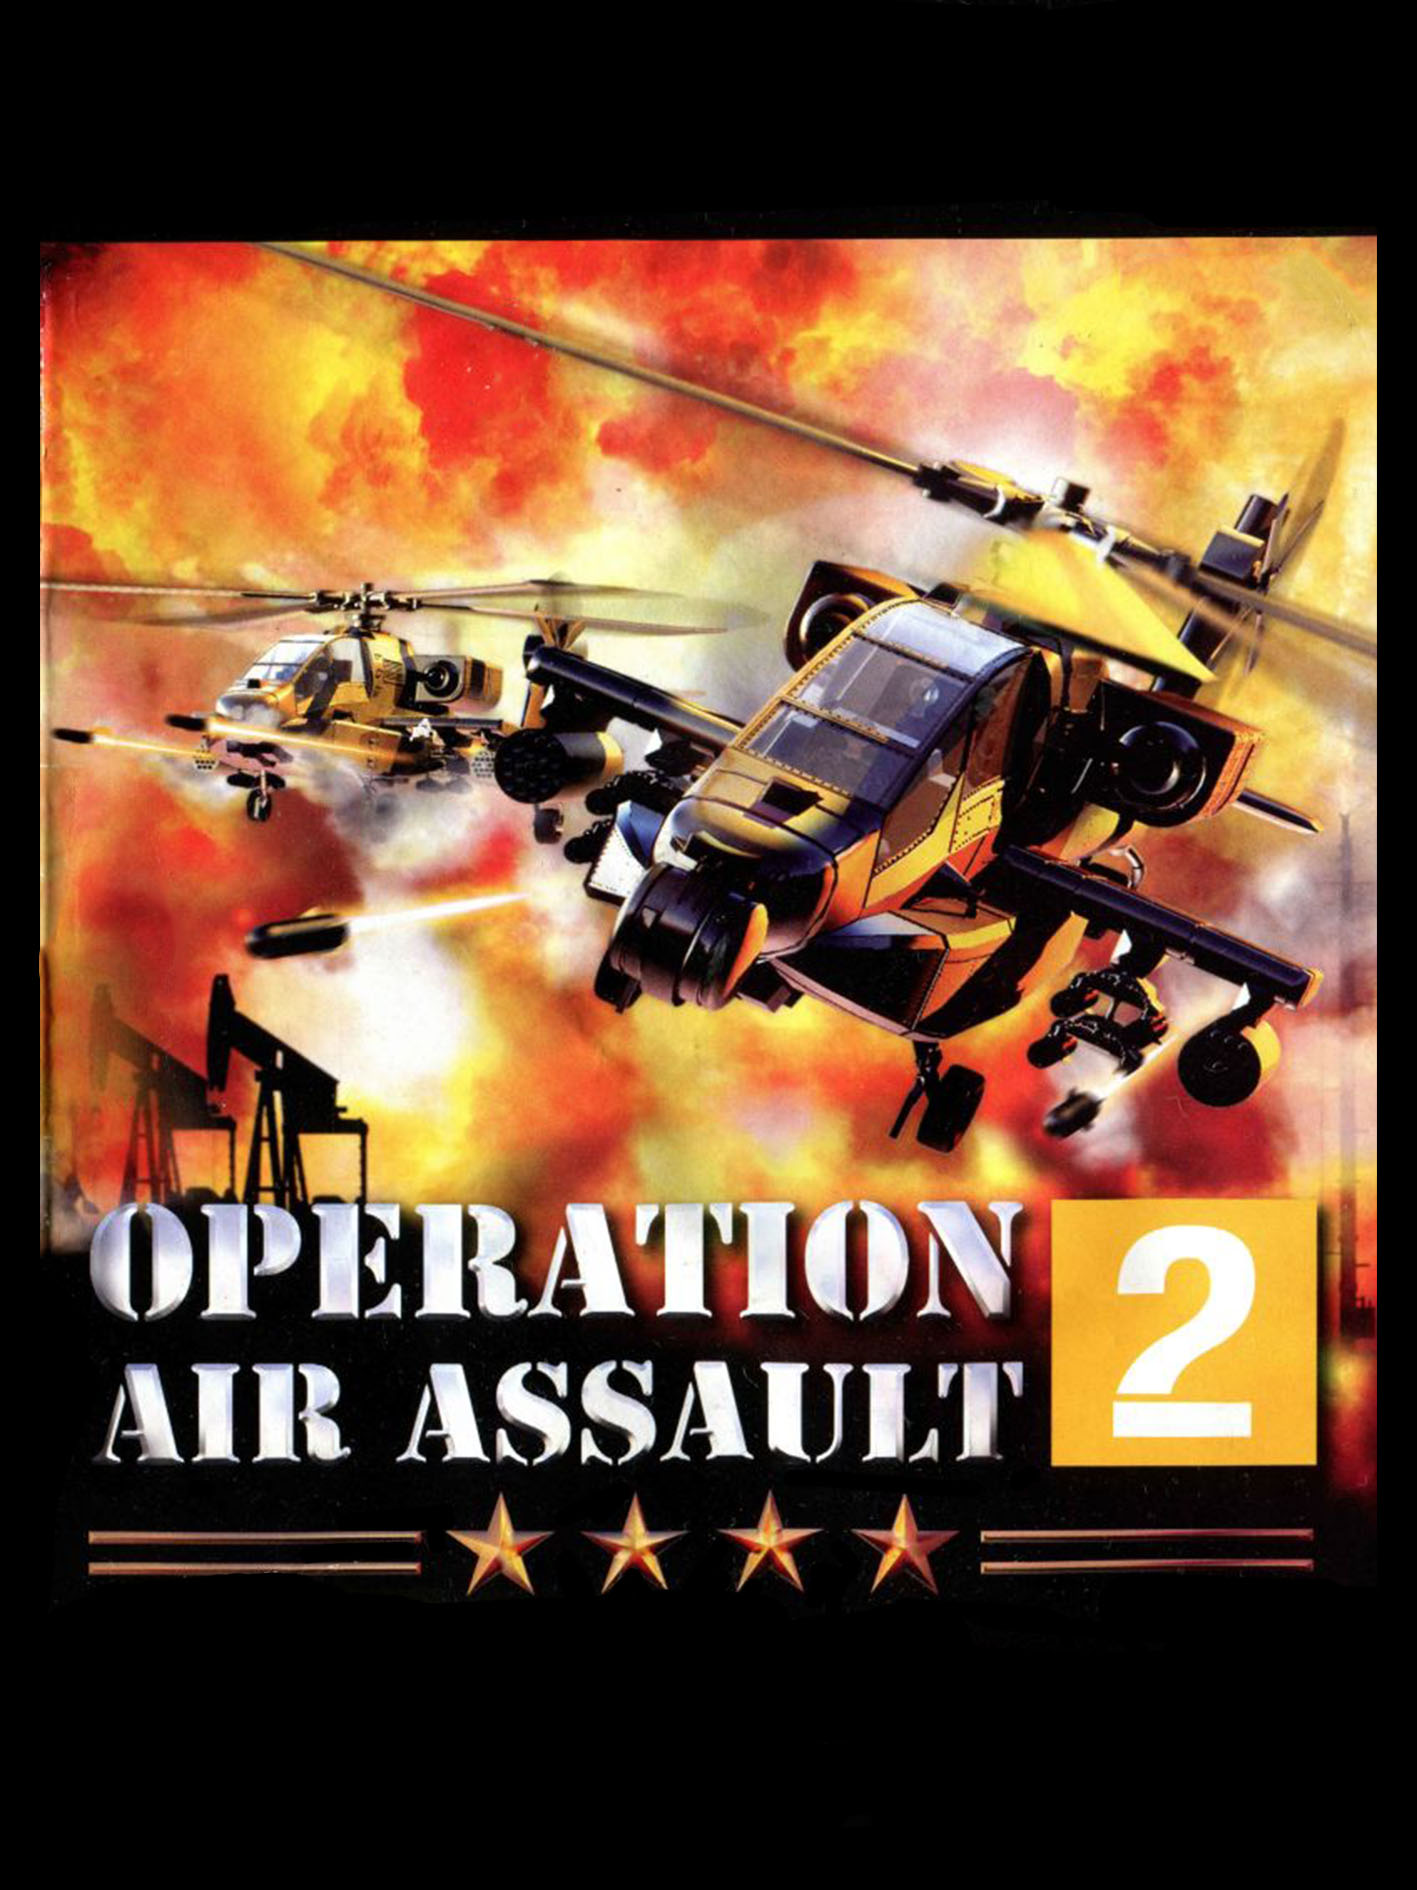 Air Assault 2 